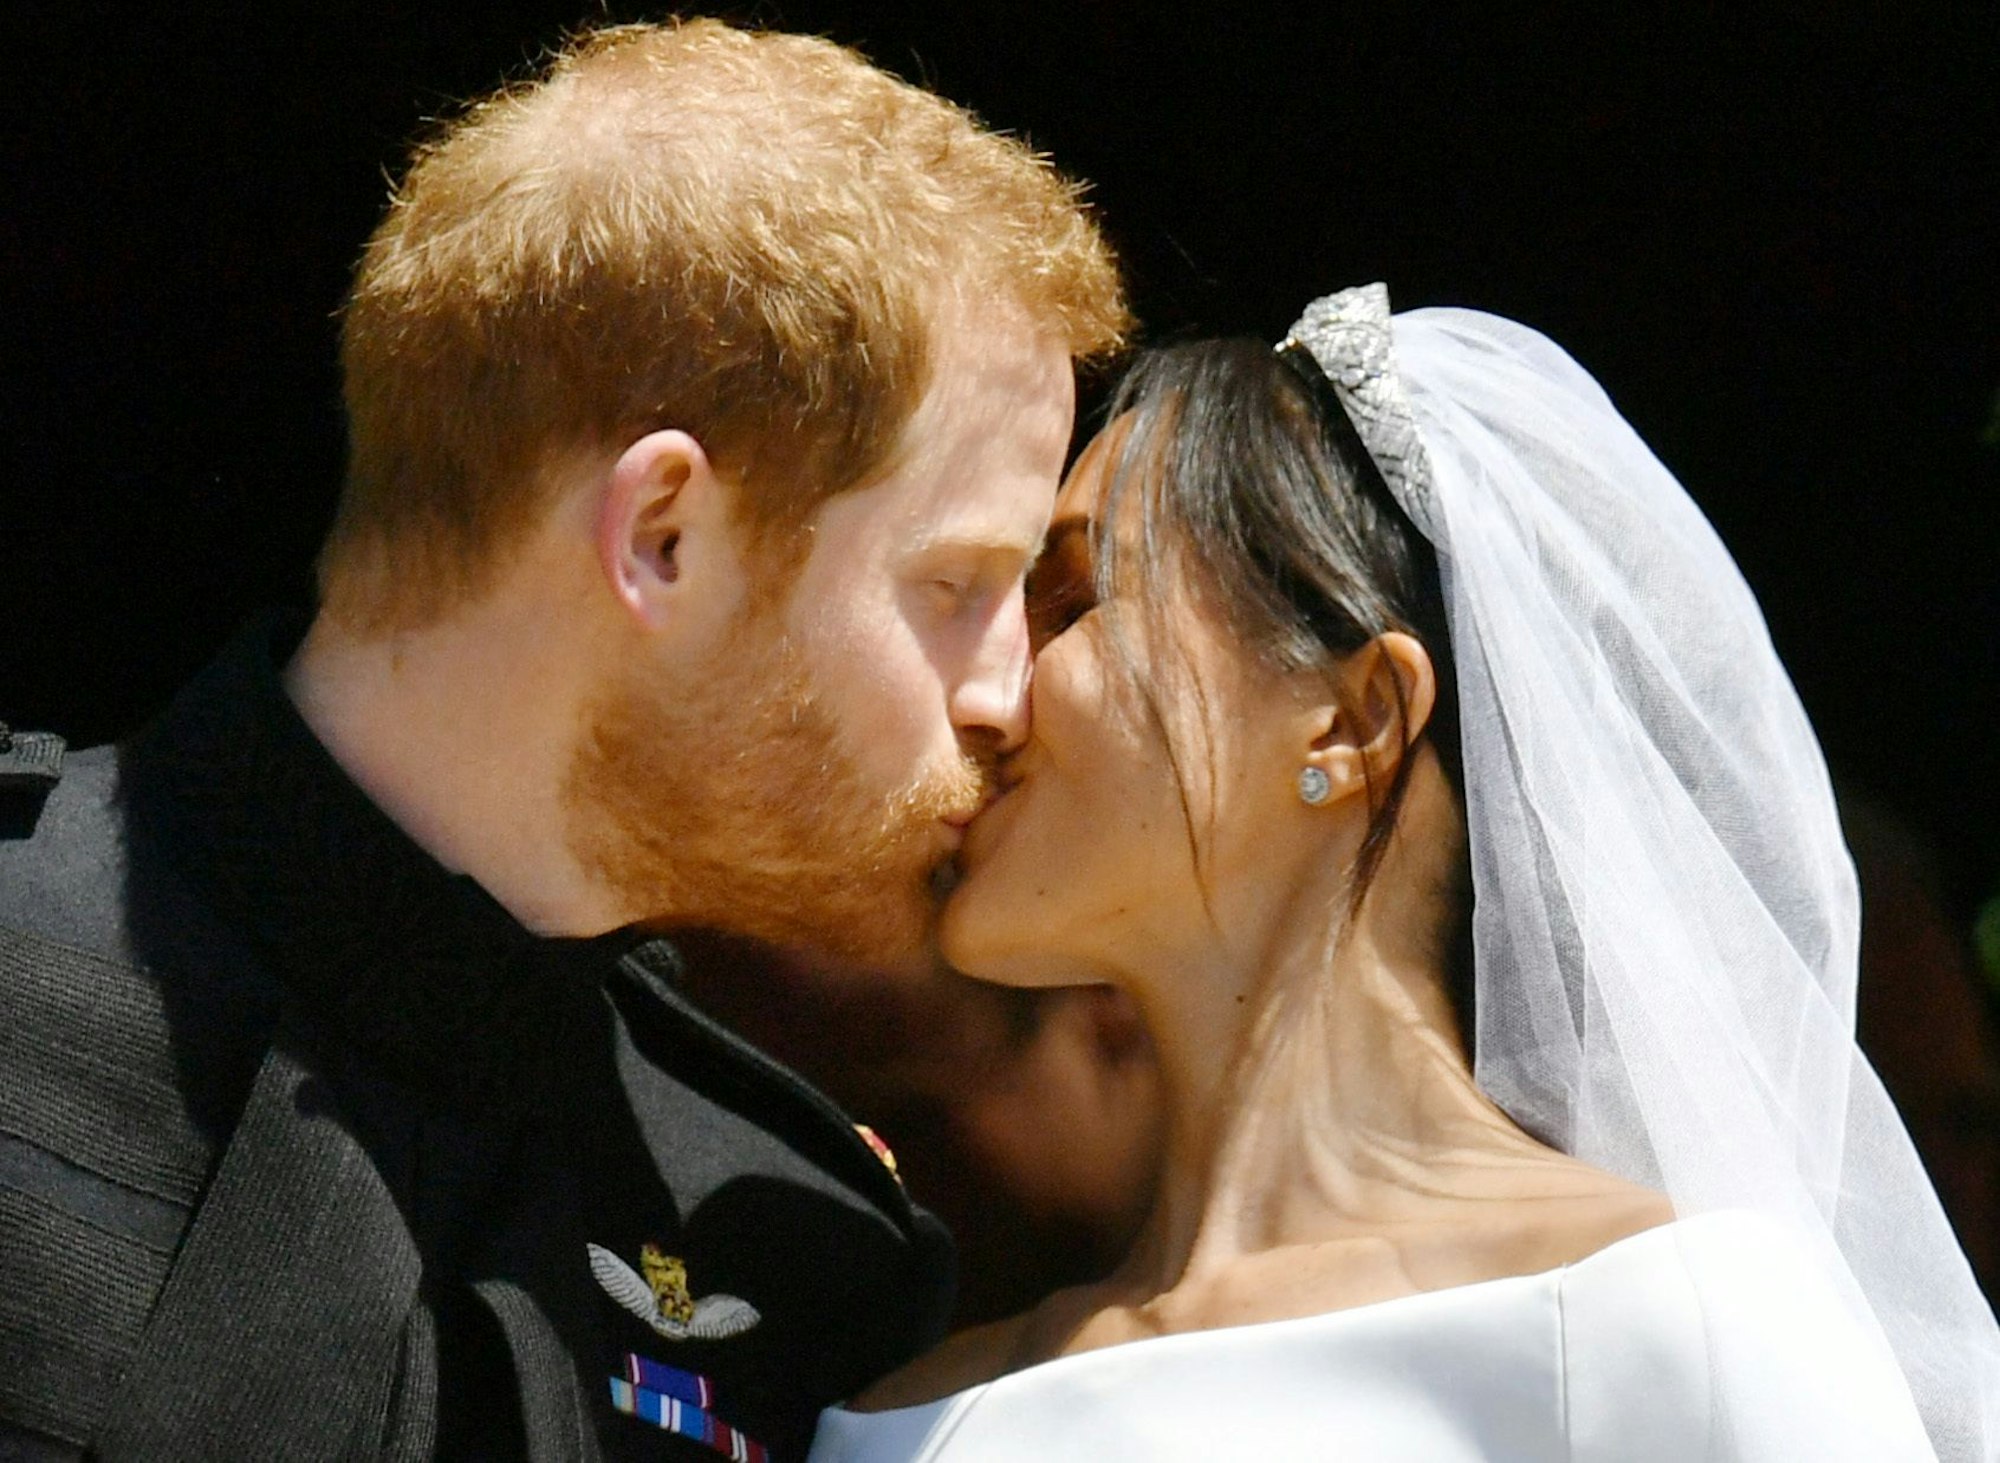 Das Brautpaar, Prinz Harry und Meghan Markle, küsst sich.